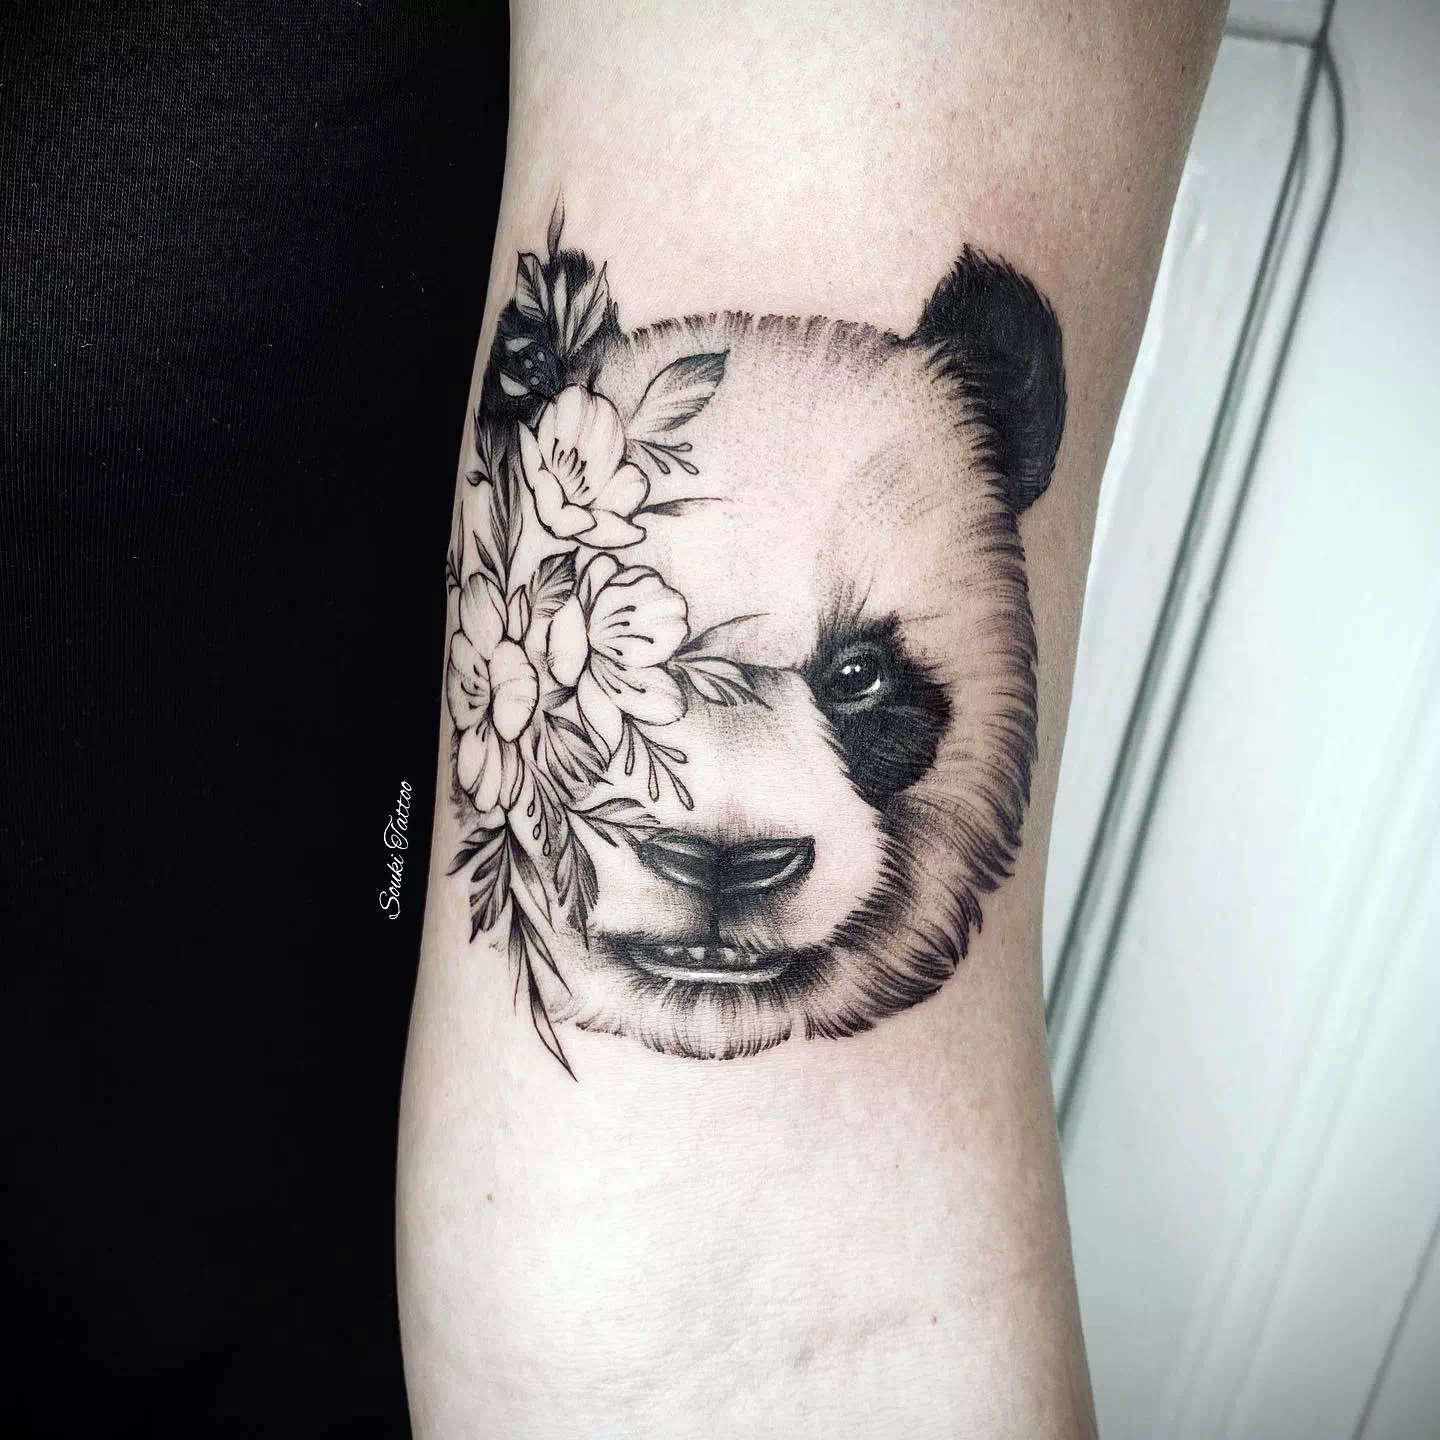 Panda tattoo ideas 16